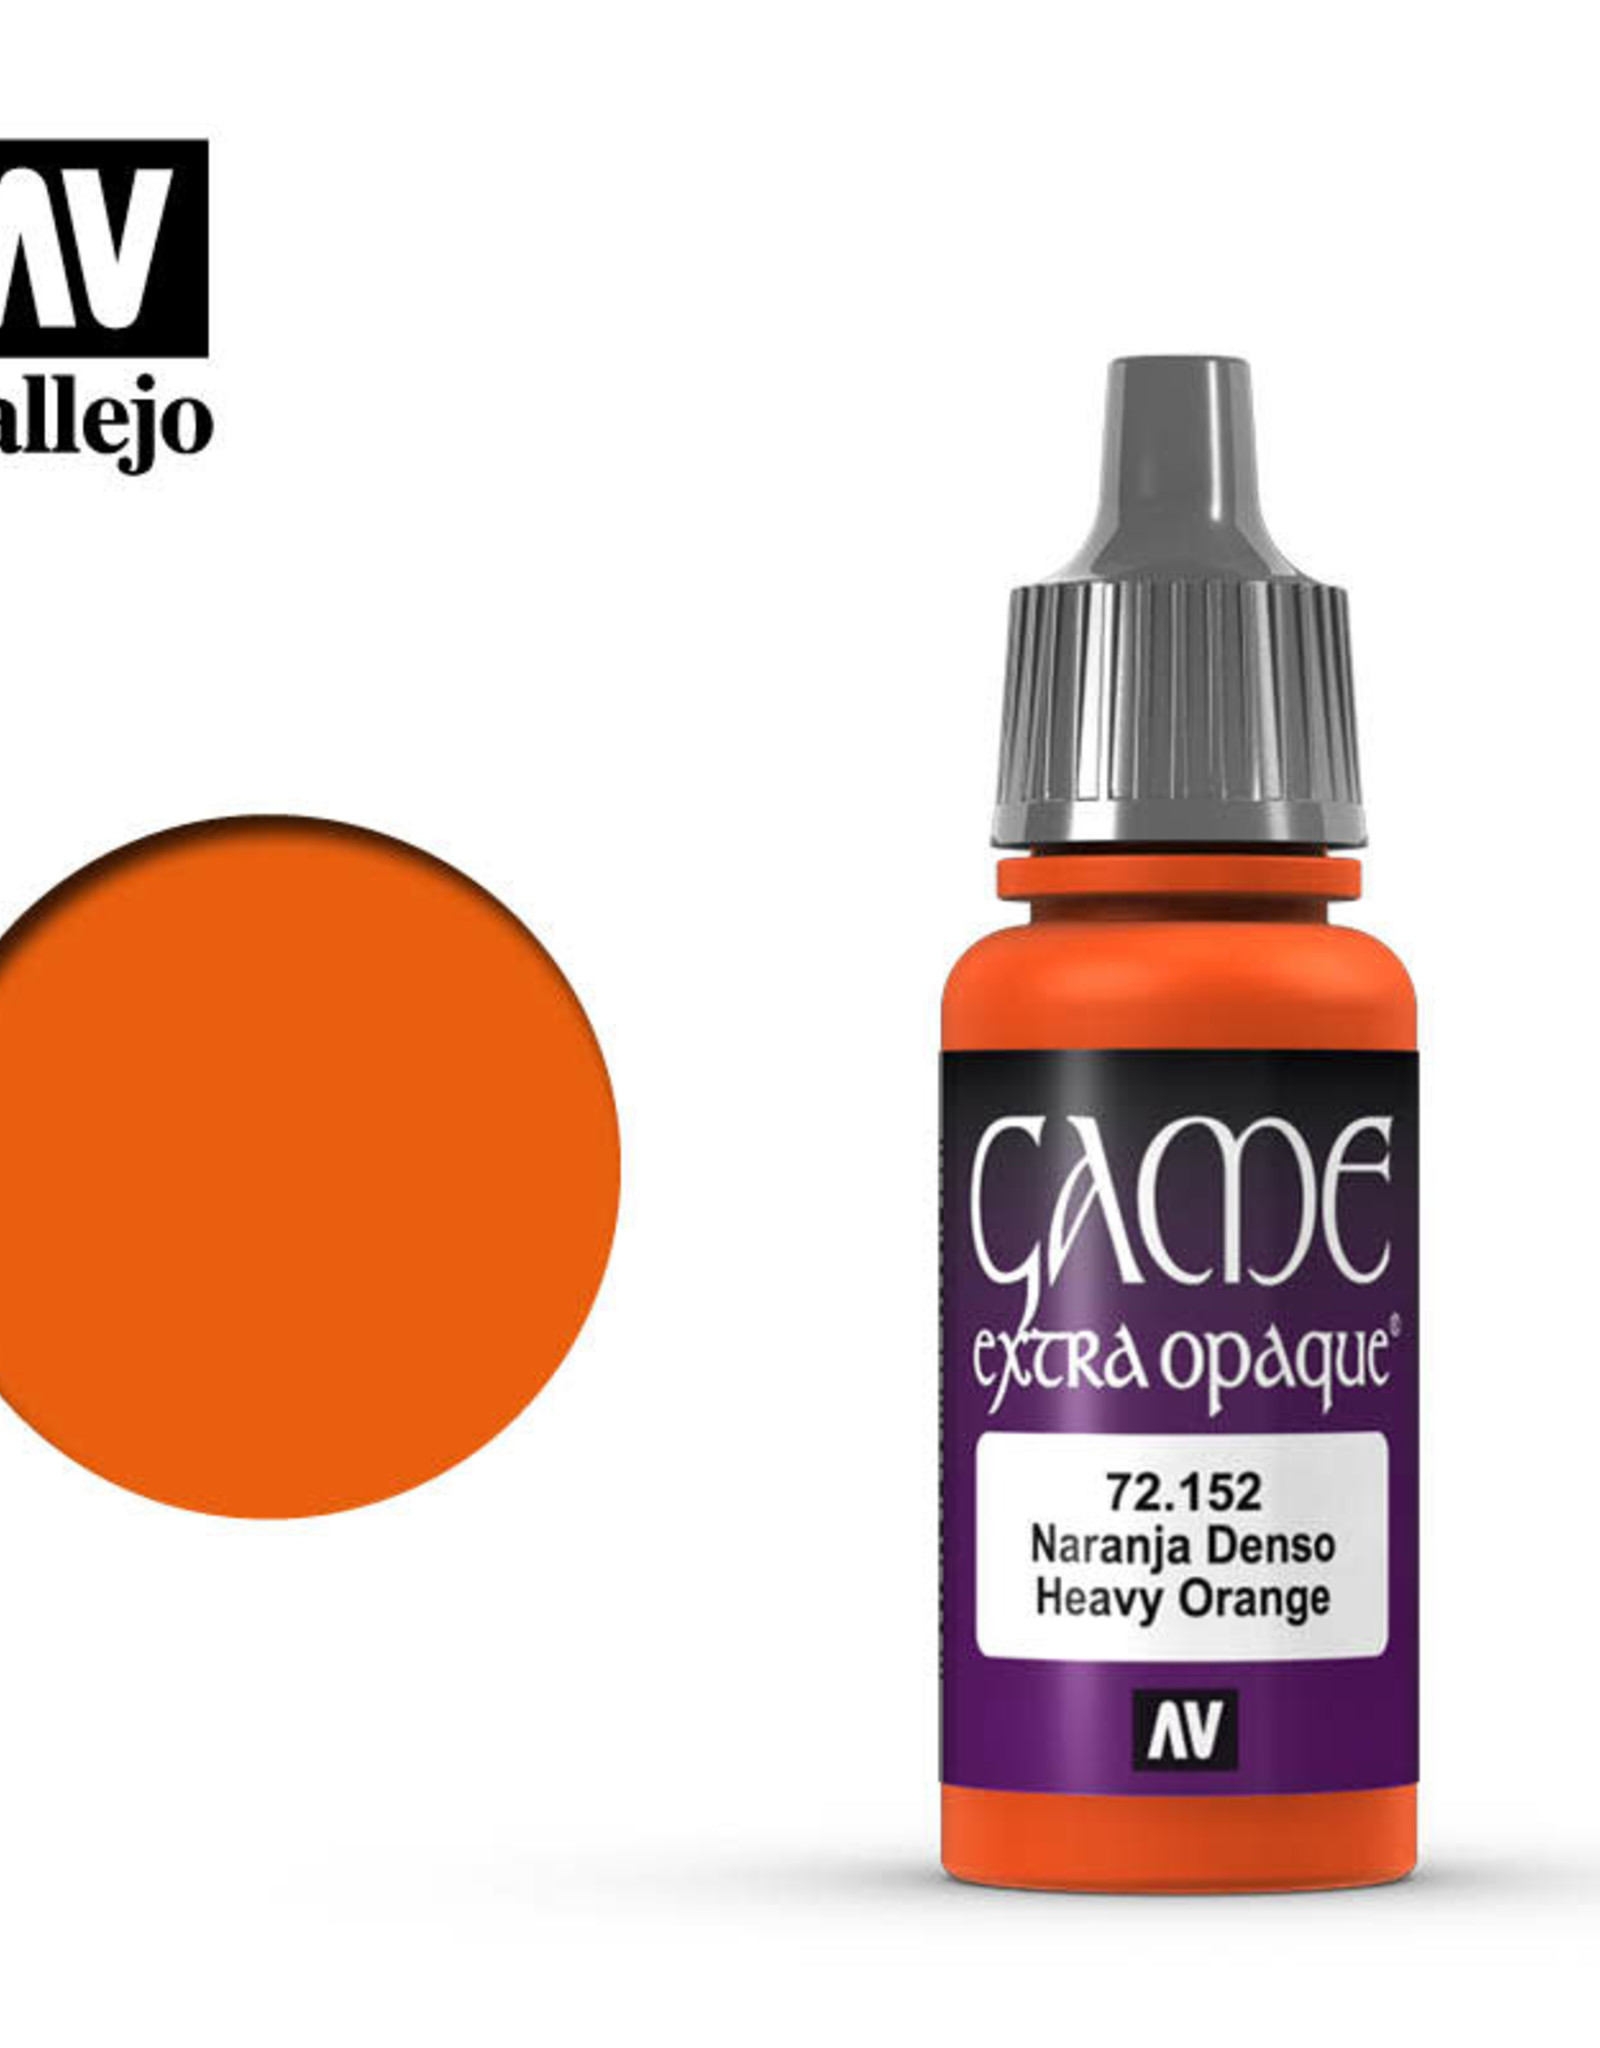 Acrylicos Vallejo AV GC: Heavy Orange - Extra Opaque 72.152 (17 ml)